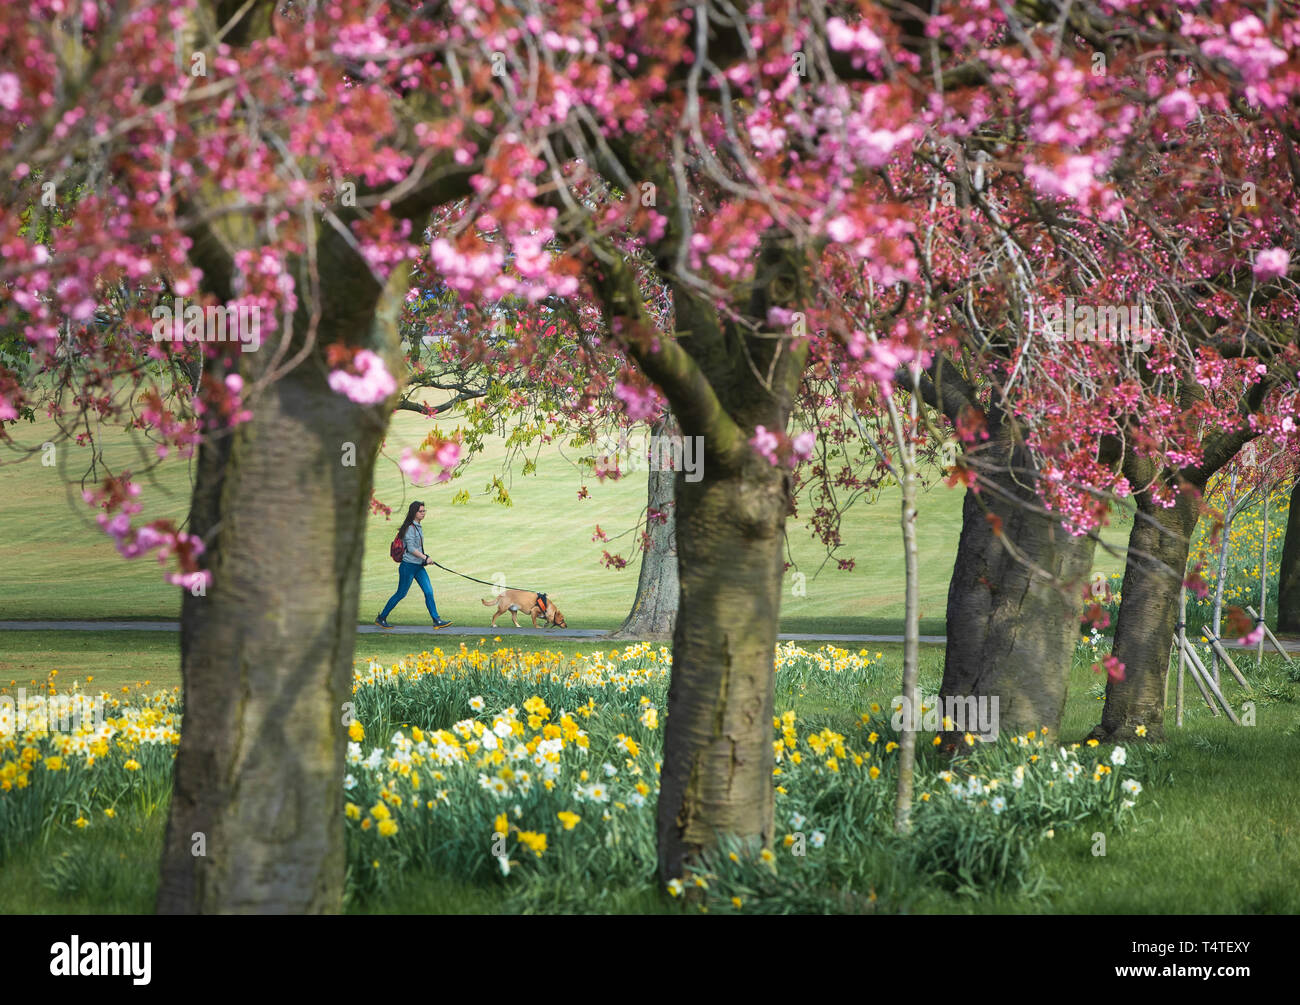 Una mujer llega un perro a lo largo de un camino bordeado de flores de cerezo en Harrogate, Yorkshire, Inglaterra ve el clima de primavera esta semana más cálidos, con temperaturas de hasta 22 grados centígrados en el tiempo para el fin de semana de Pascua. Foto de stock